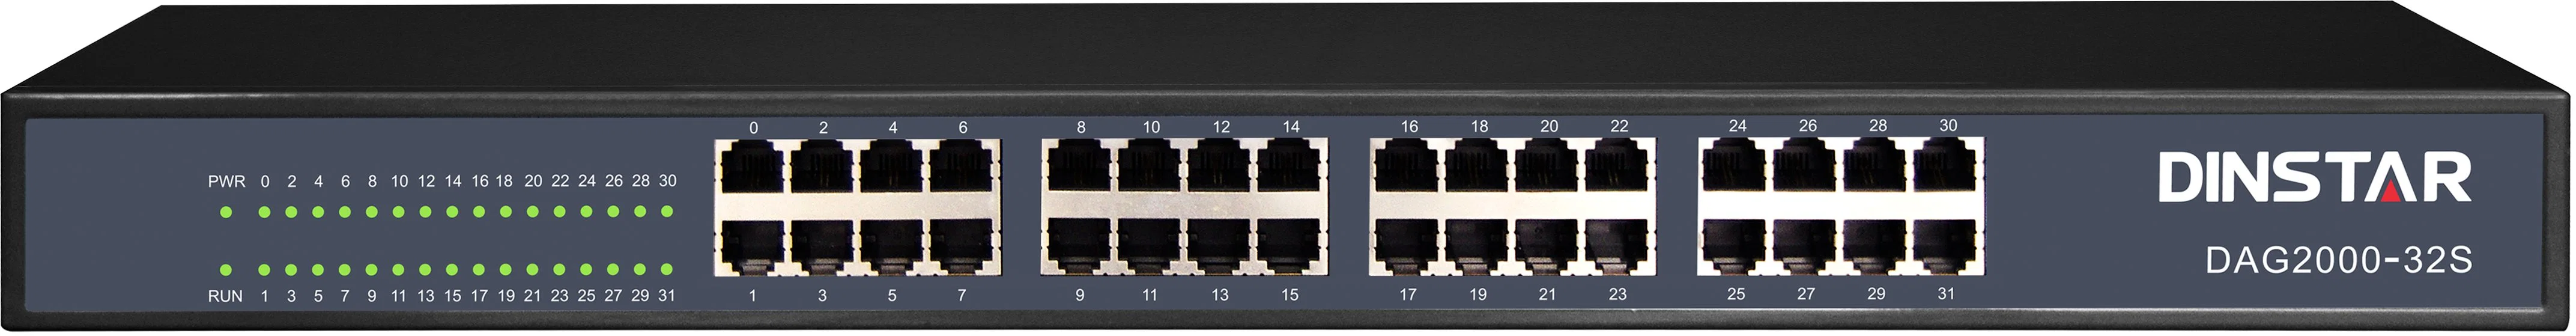 Hochmodernste 24/32-Ports Carrier-Grade VoIP FXS Gateway Dag2000-32s Einfache Installation